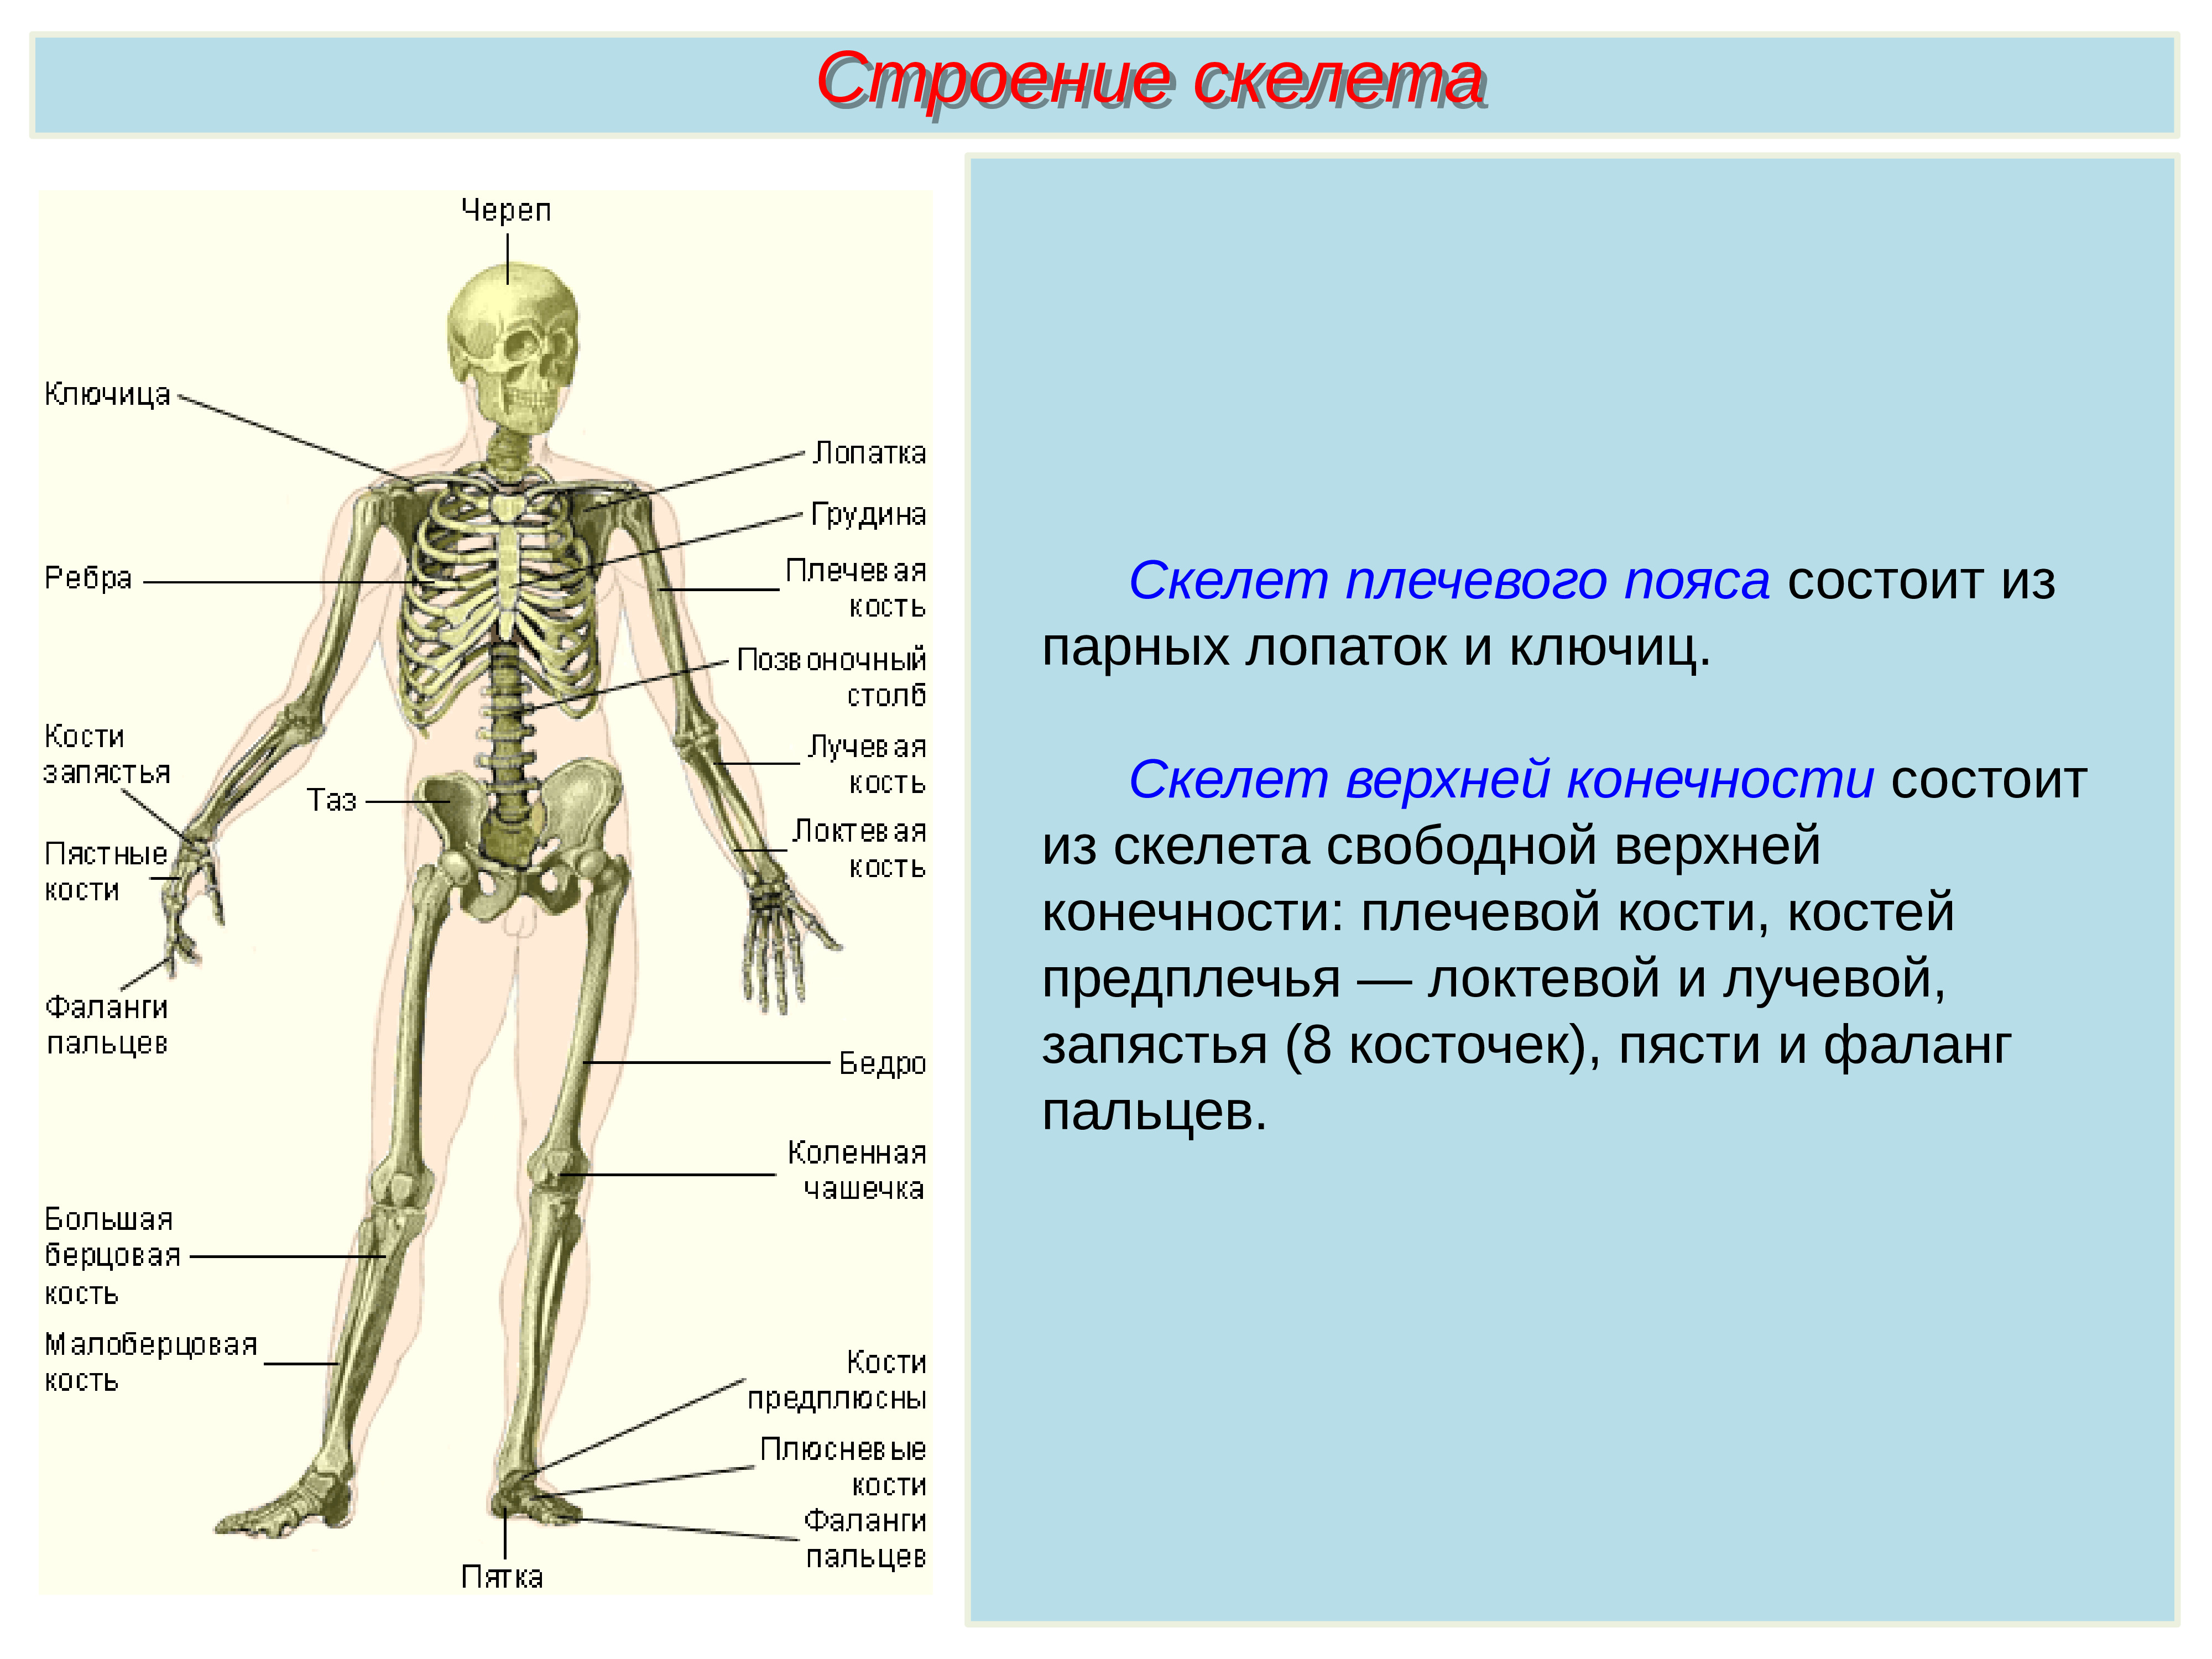 Особенности соединений скелета. Биология 8 класс скелет строение состав и соединение костей. Строение скелета туловища человека. Скелет туловища Тип соединения костей. Название костей скелета туловища.